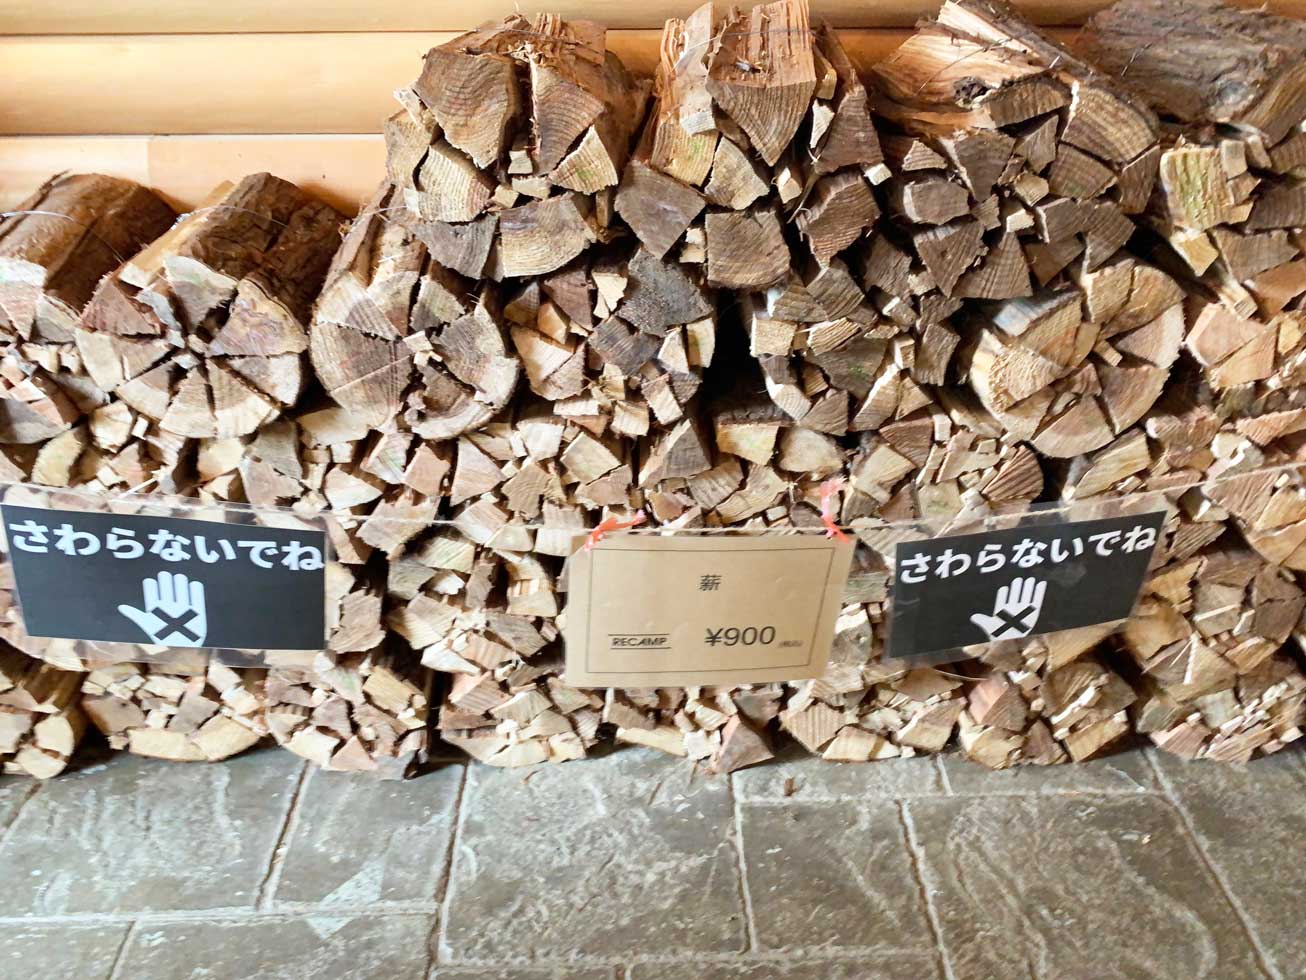 ケーヨーデイツーで販売している 薪 の種類 価格一覧をご紹介